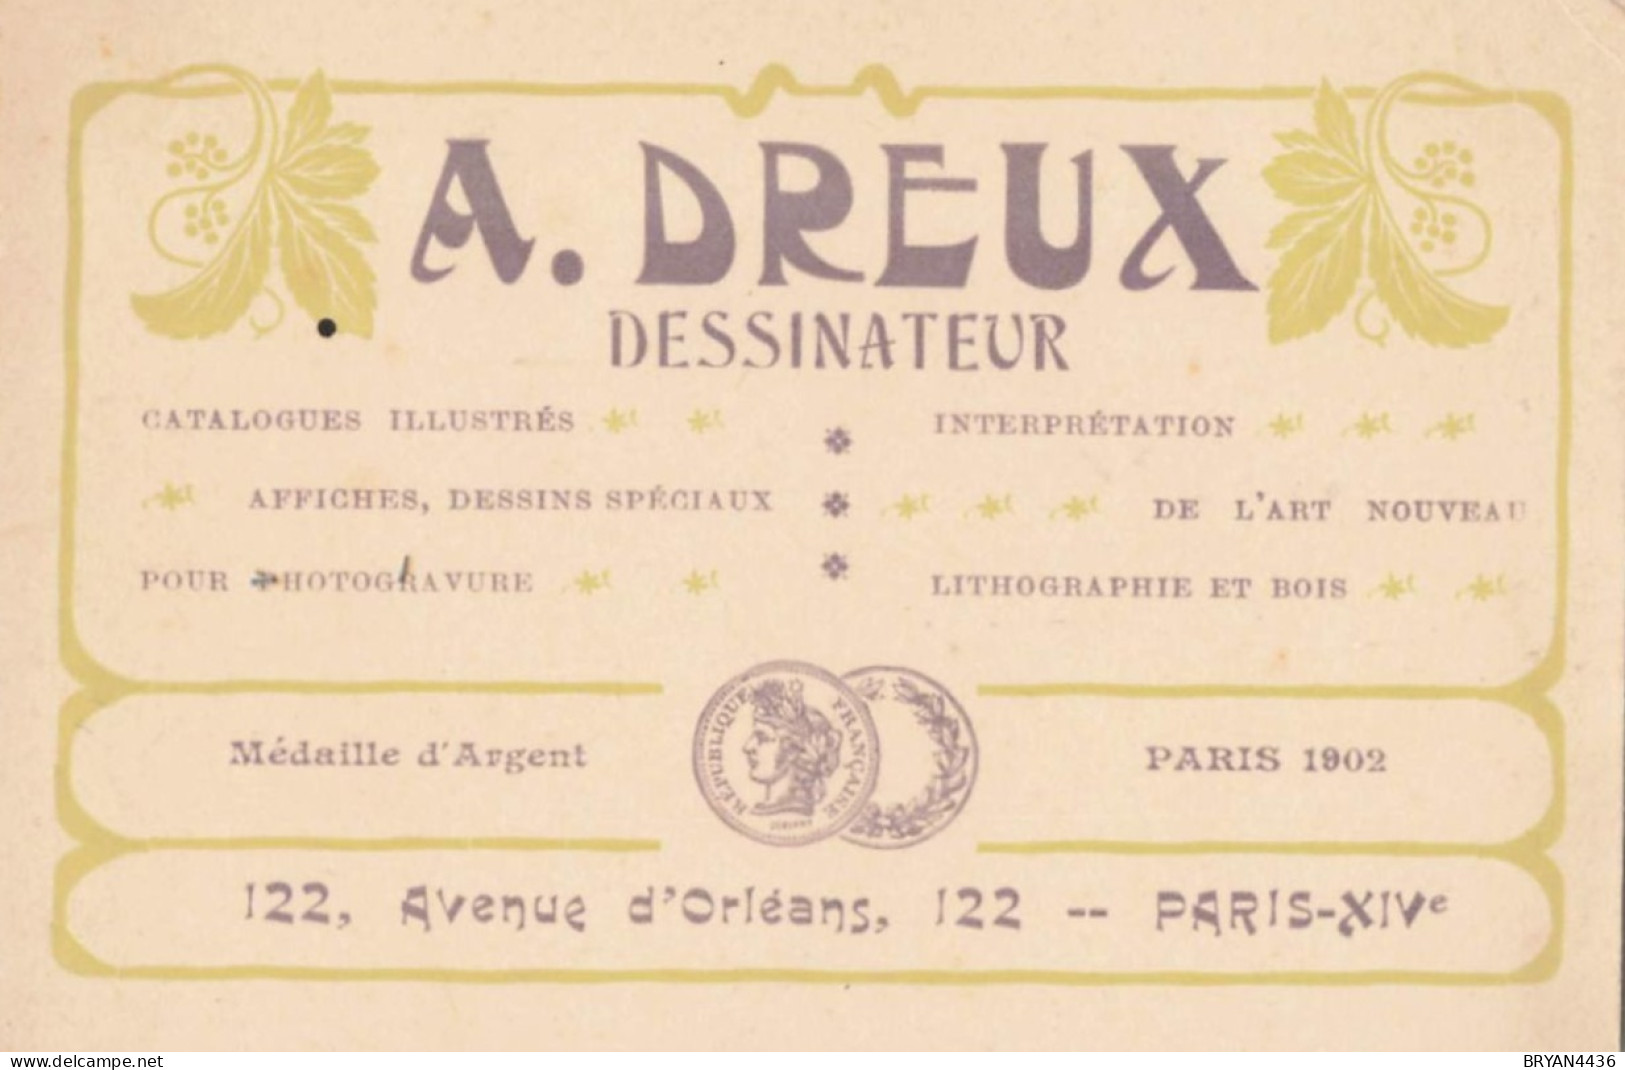 PARIS - 14 ème - DESSINATEUR  - A. DREUX - 122, AVENUE D' ORLEANS - CARTE COMMERCIALE ANCIENNE ART NOUVEAU - (8x12cm) - Paris (14)